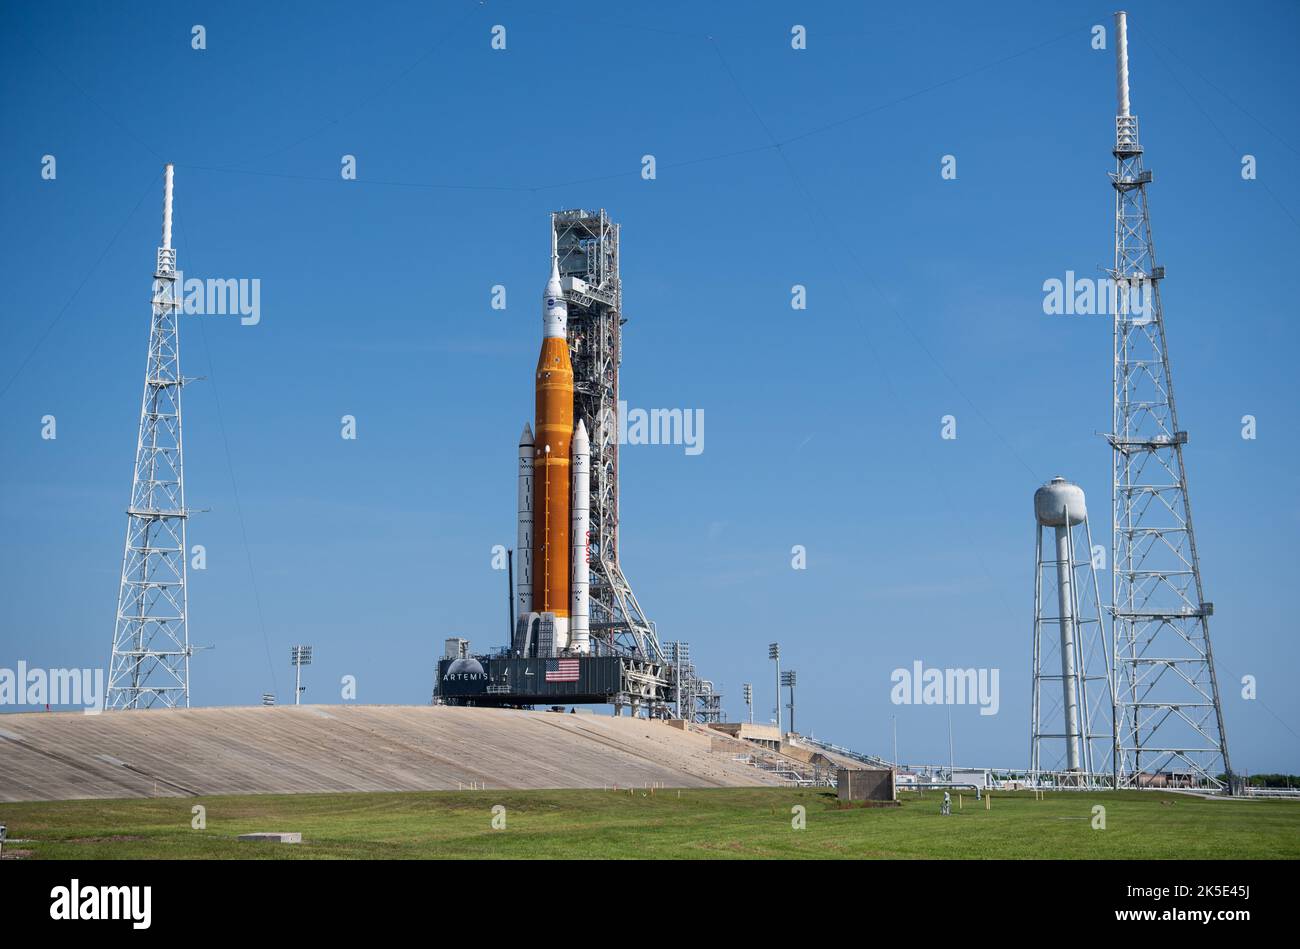 Die NASA-Rakete zum Space Launch System (SLS) mit der Orion-Sonde an Bord ist auf einem mobilen Trägerrakete auf der Launch Pad 39B, 18. August 2022, zu sehen, nachdem sie auf die Startrampe im Kennedy Space Center der NASA in Florida ausgerollt wurde. Die Artemis I-Mission der NASA - der erste integrierte Test der Tiefenraumexplorationssysteme der Agentur: Die Raumsonde Orion, die SLS-Rakete und die unterstützenden Bodensysteme. Der Start des unbemundeten Flugtests wurde verschoben. Eine optimierte Version eines Originalbildes der NASA. Quelle: NASA/JKowsky) Stockfoto